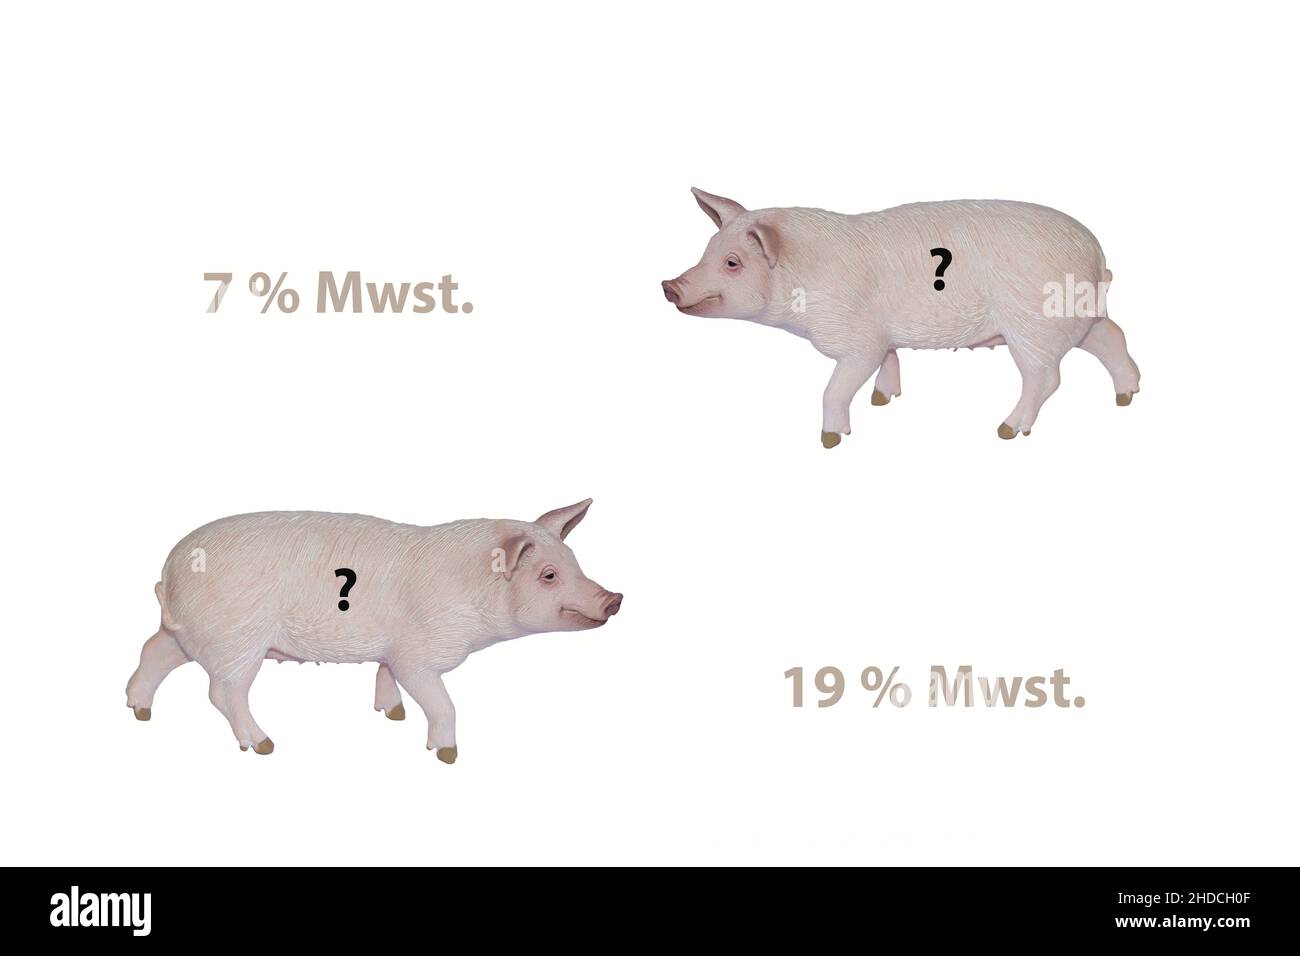 Tiere, Schwein, Fleischlieferanten, Erhoehung der Mwst. Von 7% auf 19%, Steuer, Foto Stock